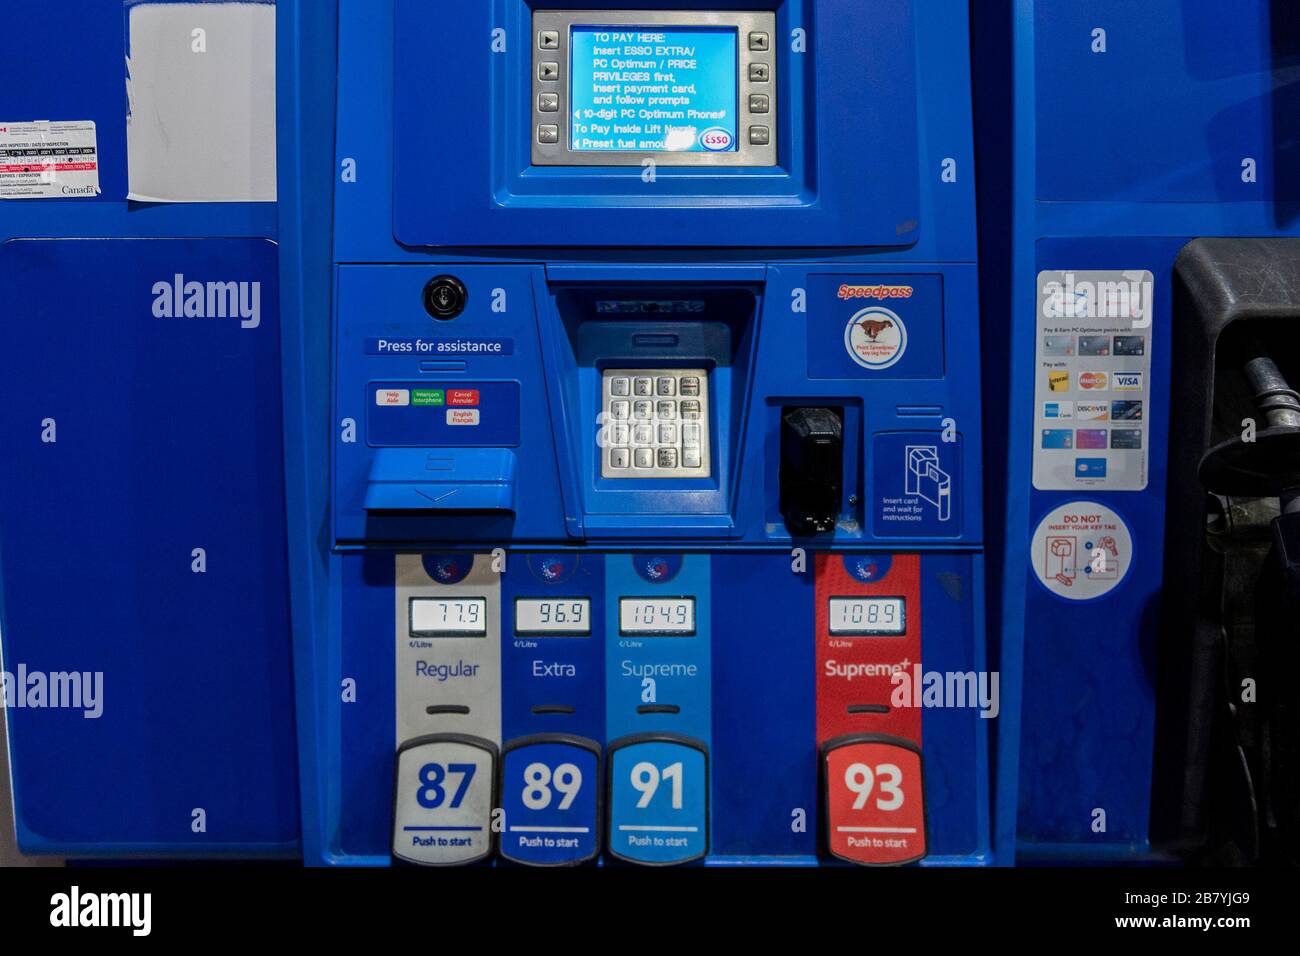 Toronto, Canada. 18 mars 2020. Le prix du gaz est de 77,9 cents le litre dans une station-service Esso située dans la banlieue nord de Toronto. Le prix du gaz a baissé en raison de l'éclosion de COVID-19. Dominic Chan/EXImages Banque D'Images